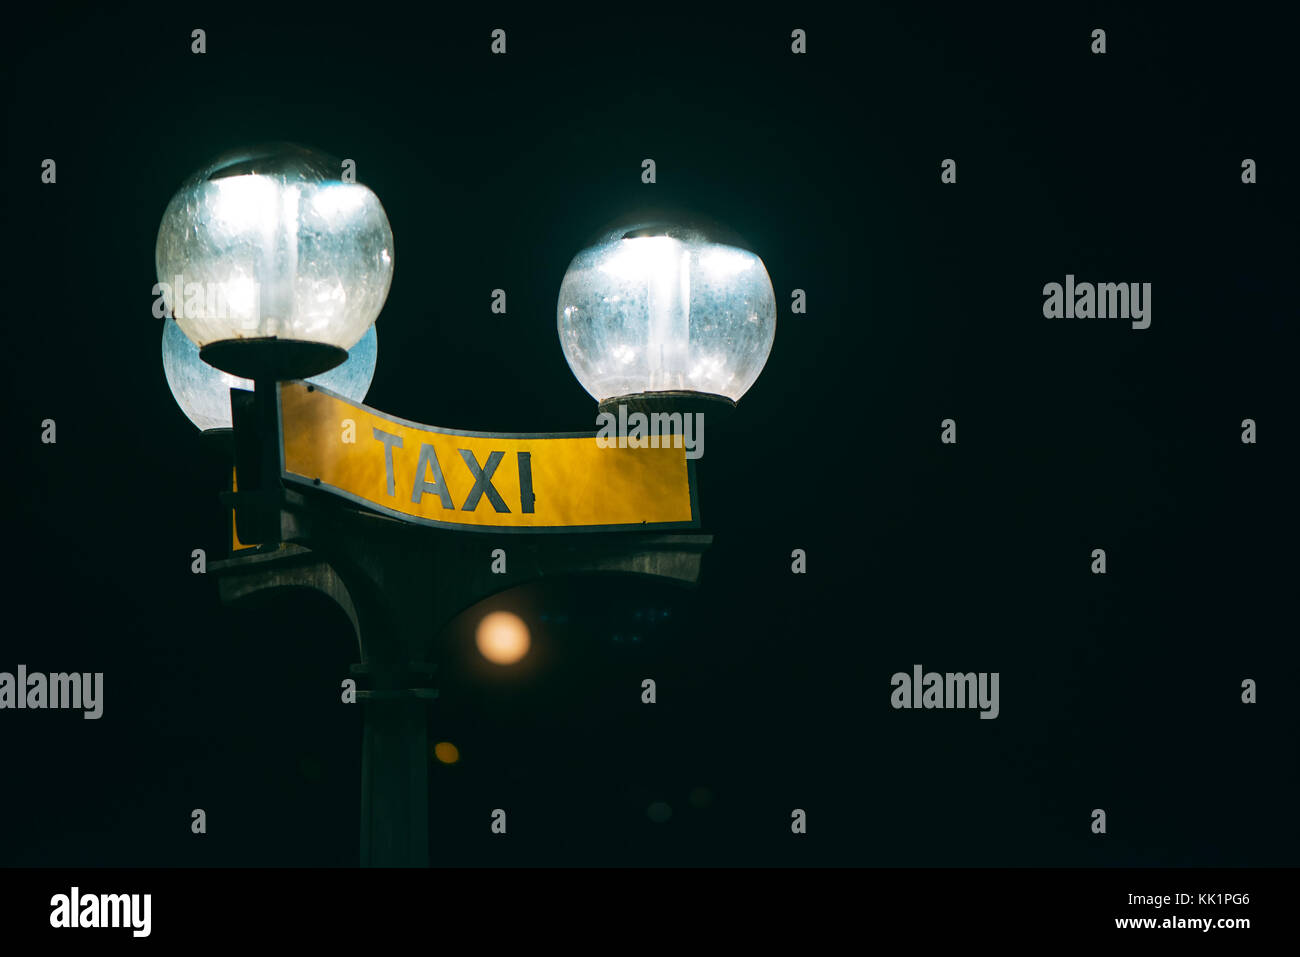 Taxi sign dans la nuit éclairée par la lumière de la rue Banque D'Images